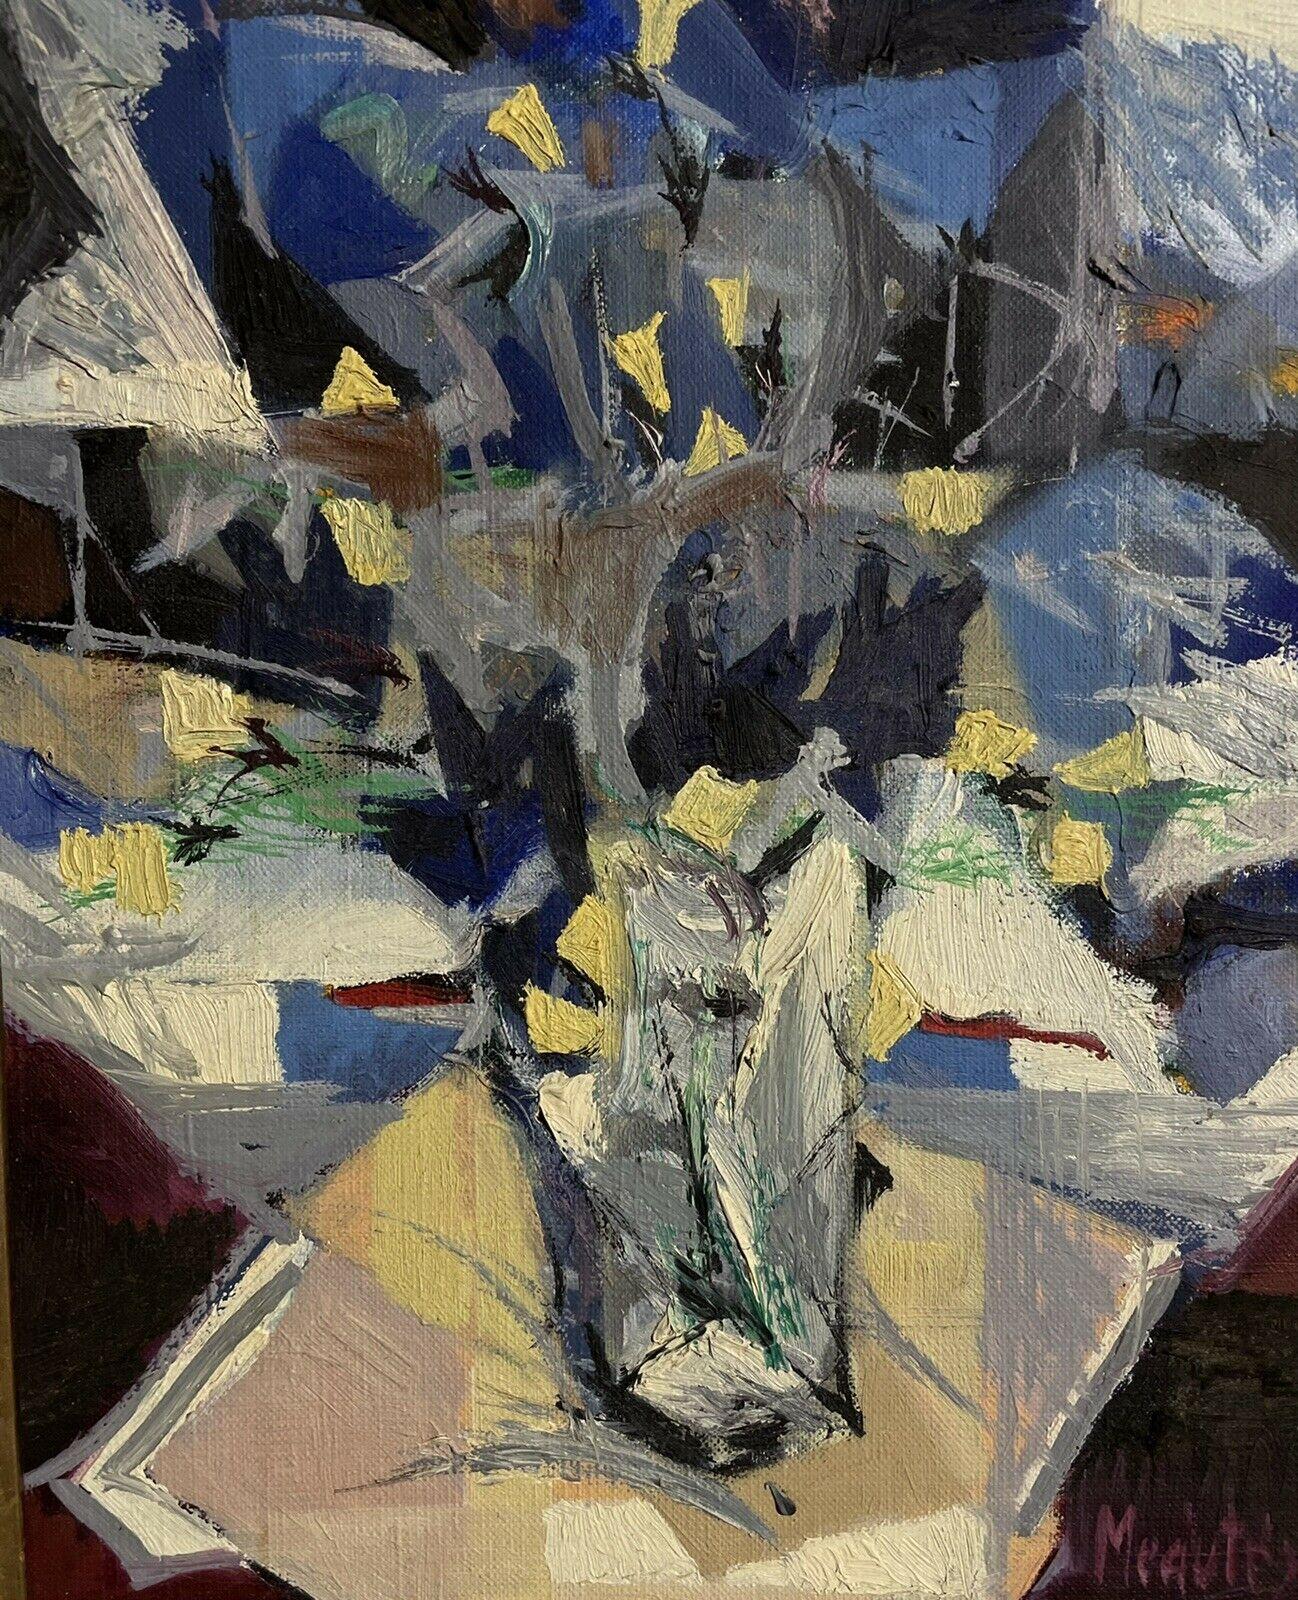 Artistics/ School : Artiste cubiste/ abstrait français, signé, circa 1970's

Titre : Fleurs bleues et blanches dans un vase

Médium : peinture à l'huile sur toile, encadrée

encadré : 20 x 17 pouces
peinture : 14 x 10.75 pouces

Collectional :